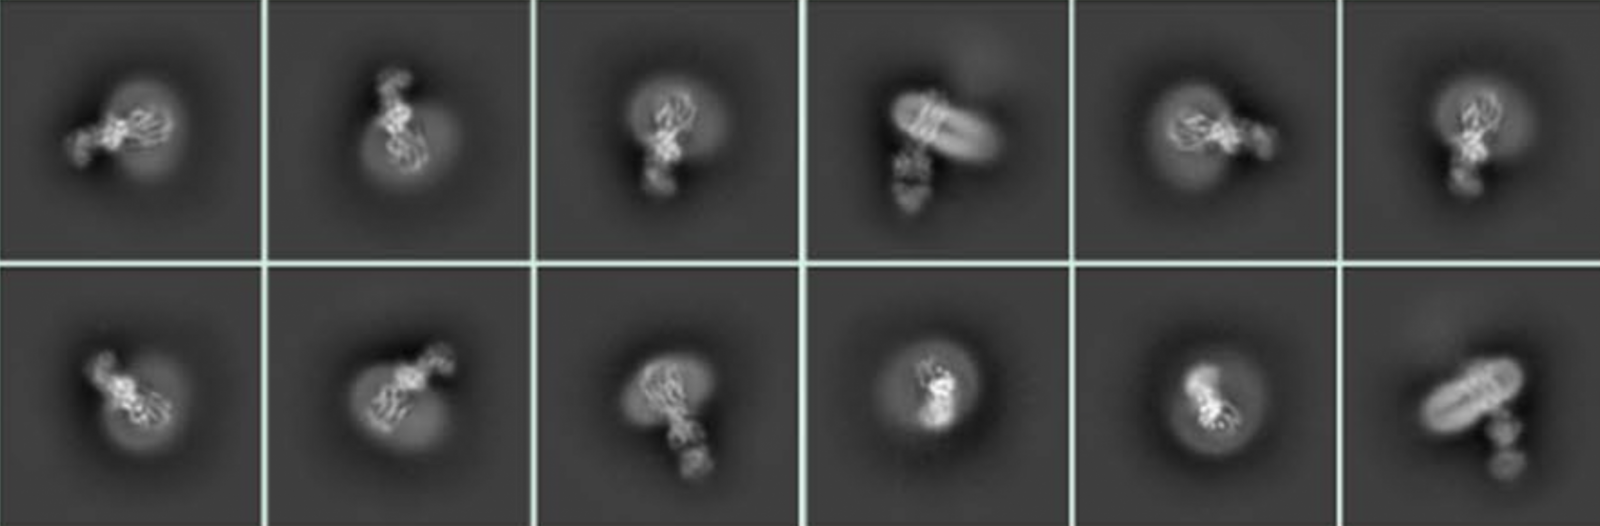 cryoEM images of the omega-3 transporter